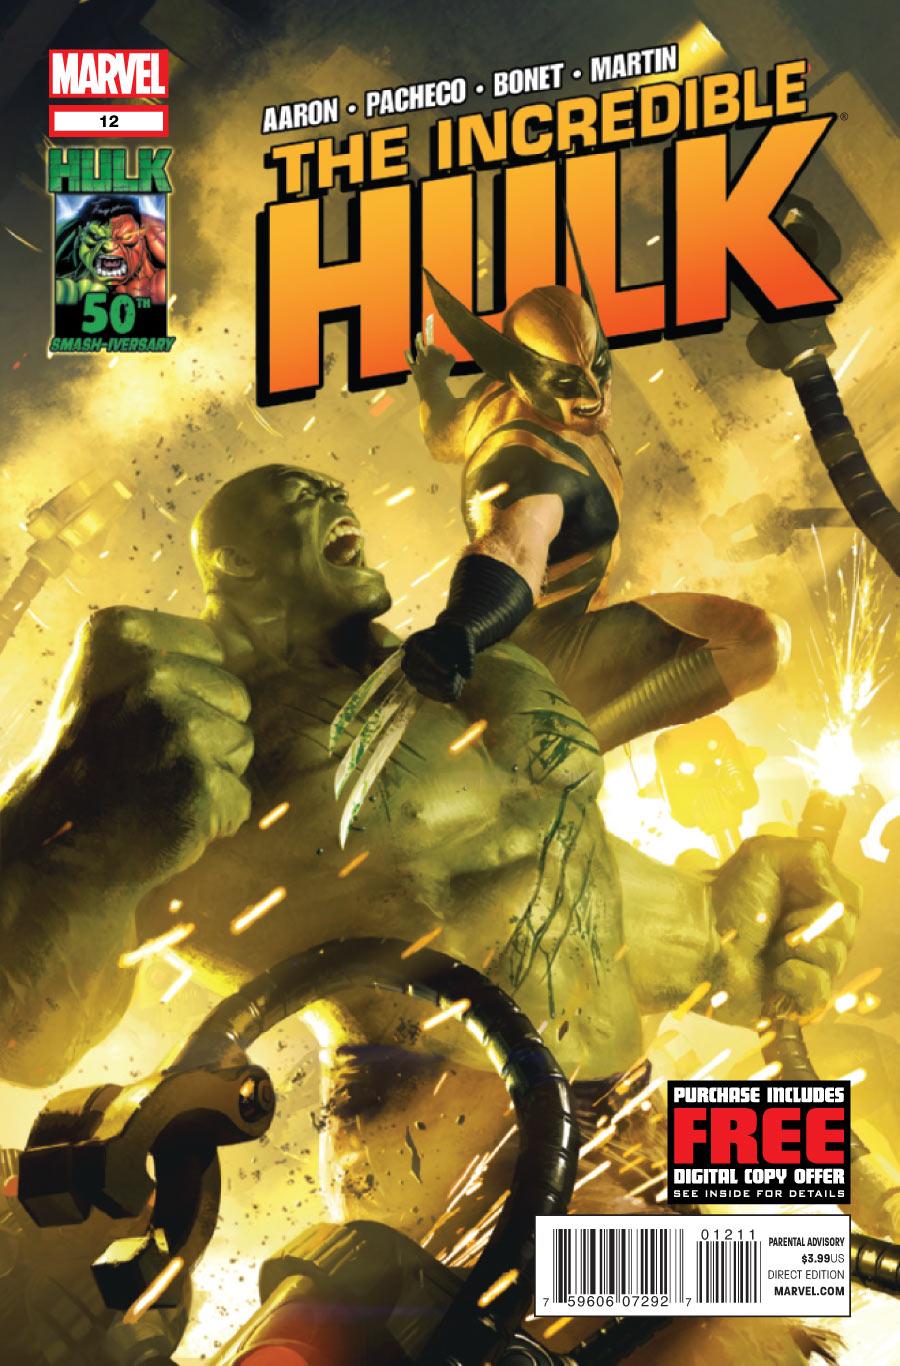 The Incredible Hulk Vol. 3 #12